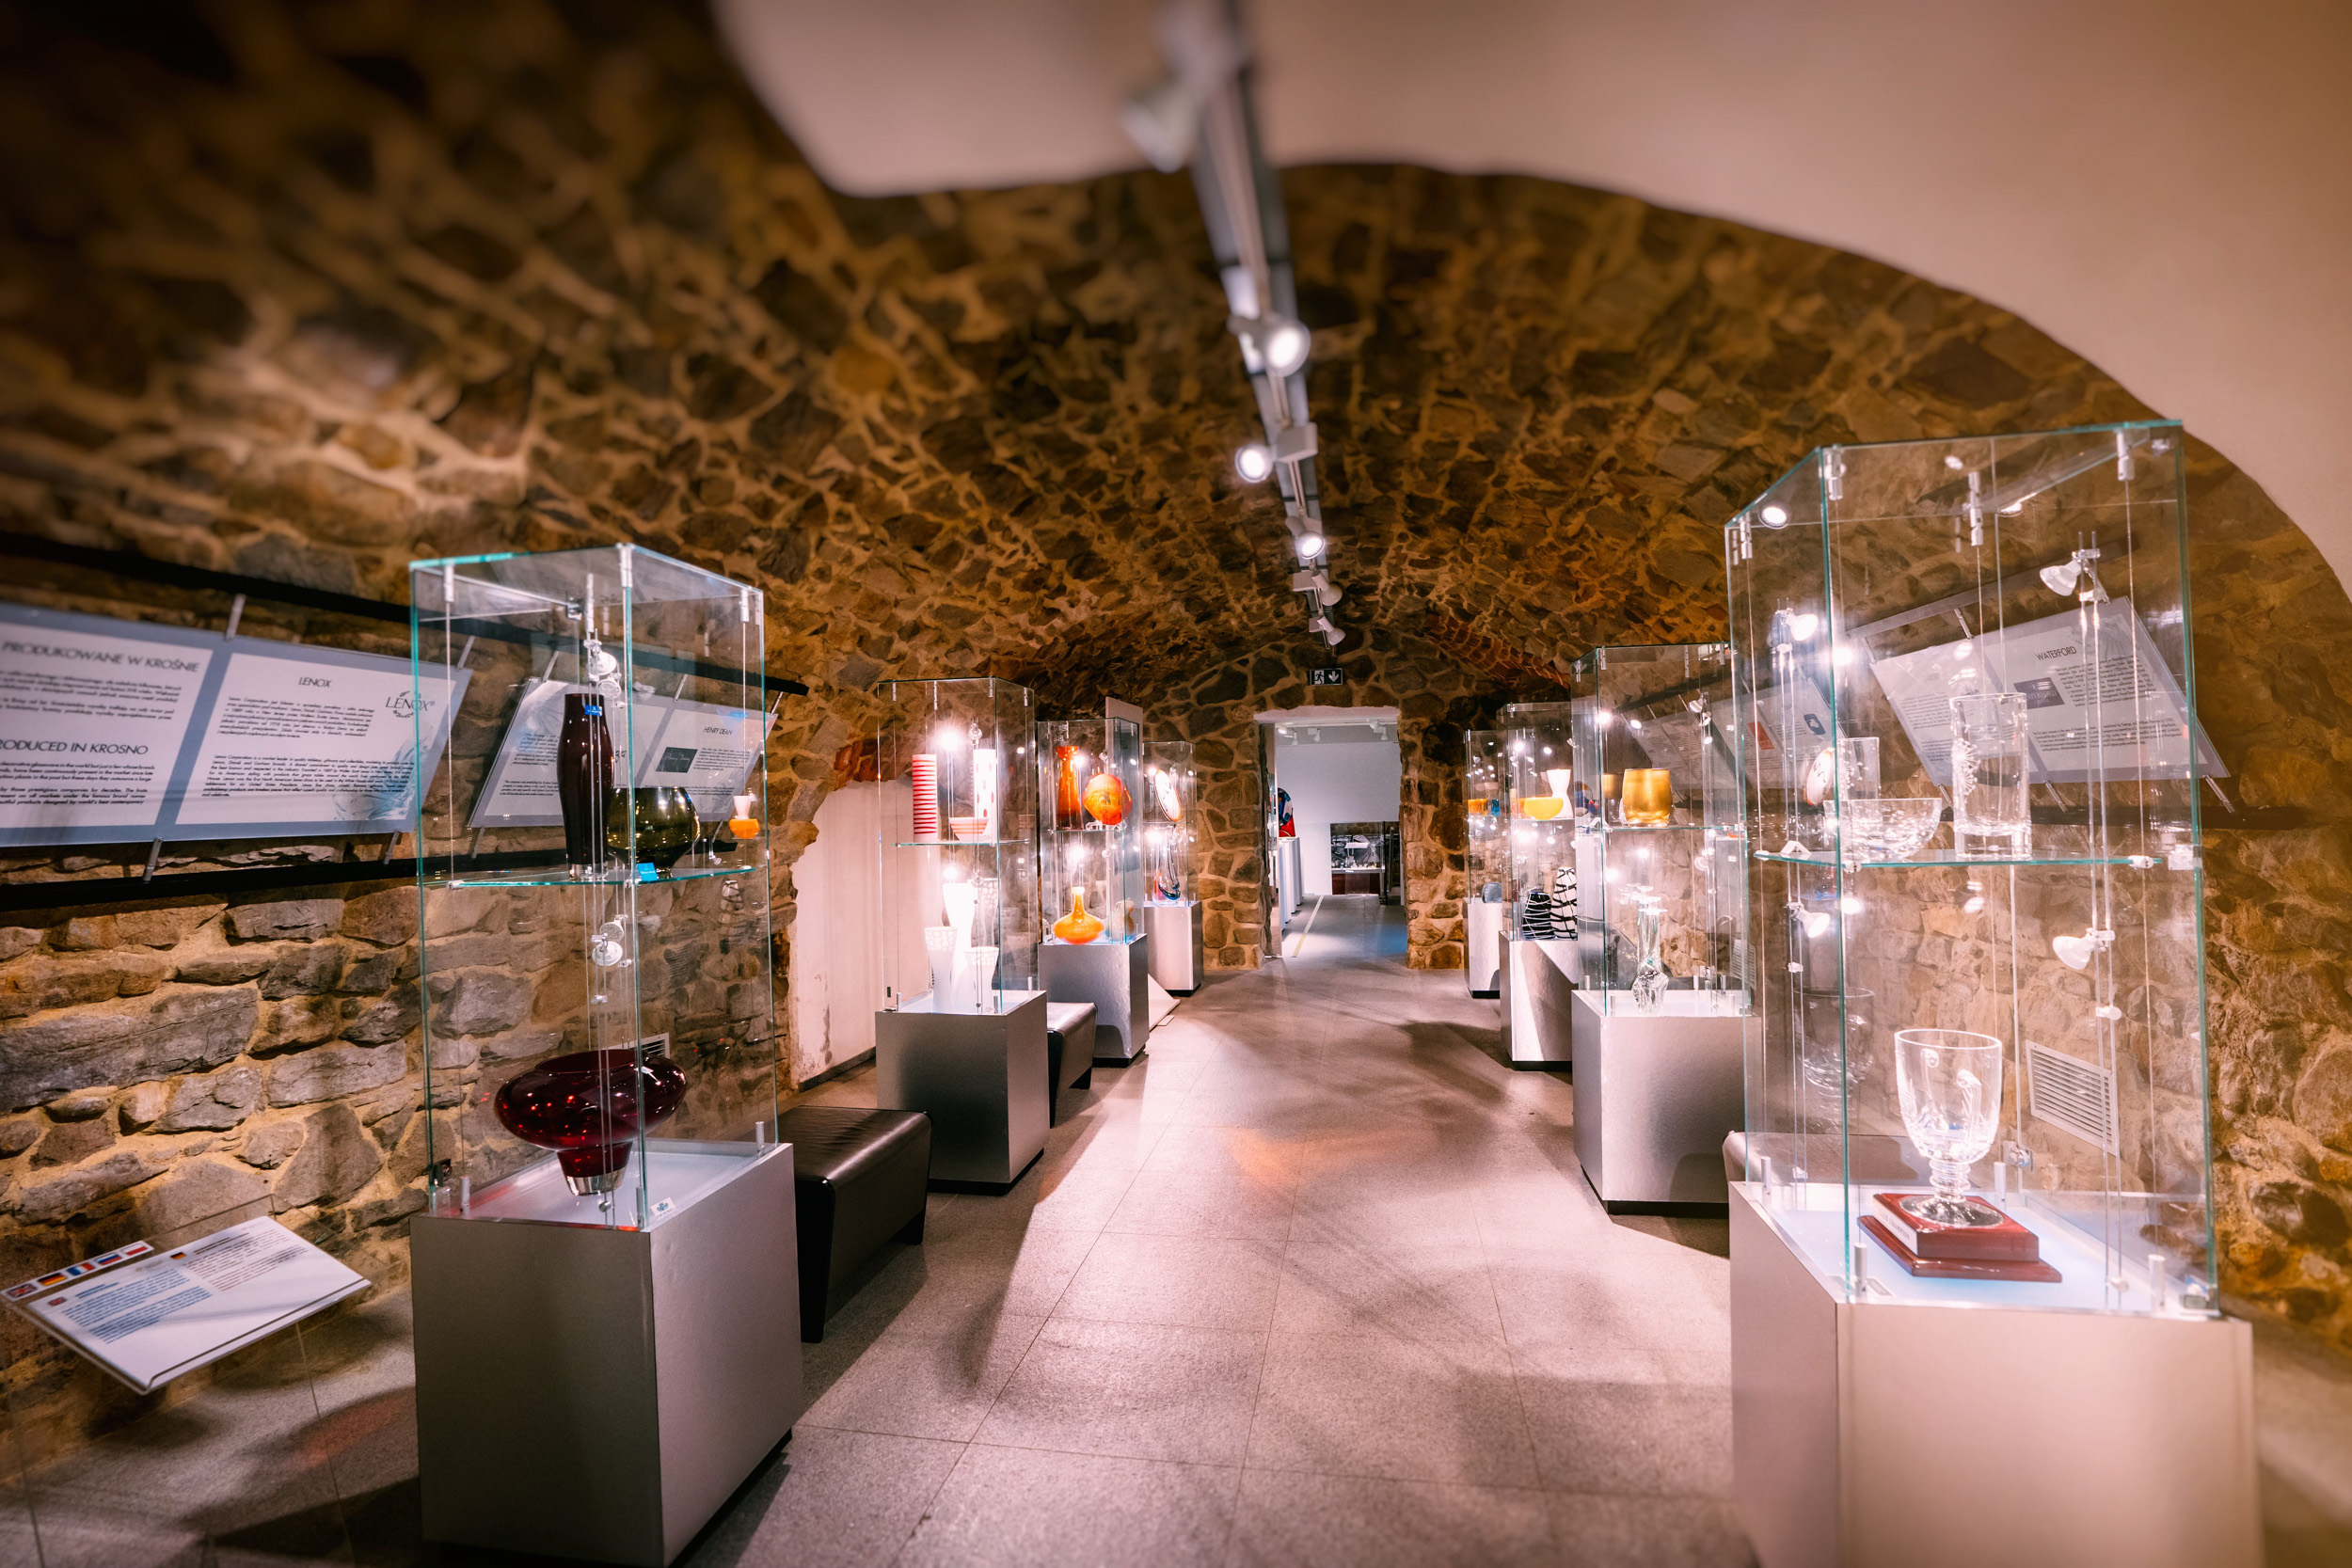 Wnętrze Muzeum, widok na podświetlone gabloty z eksponatami  - wyrobami ze szkła